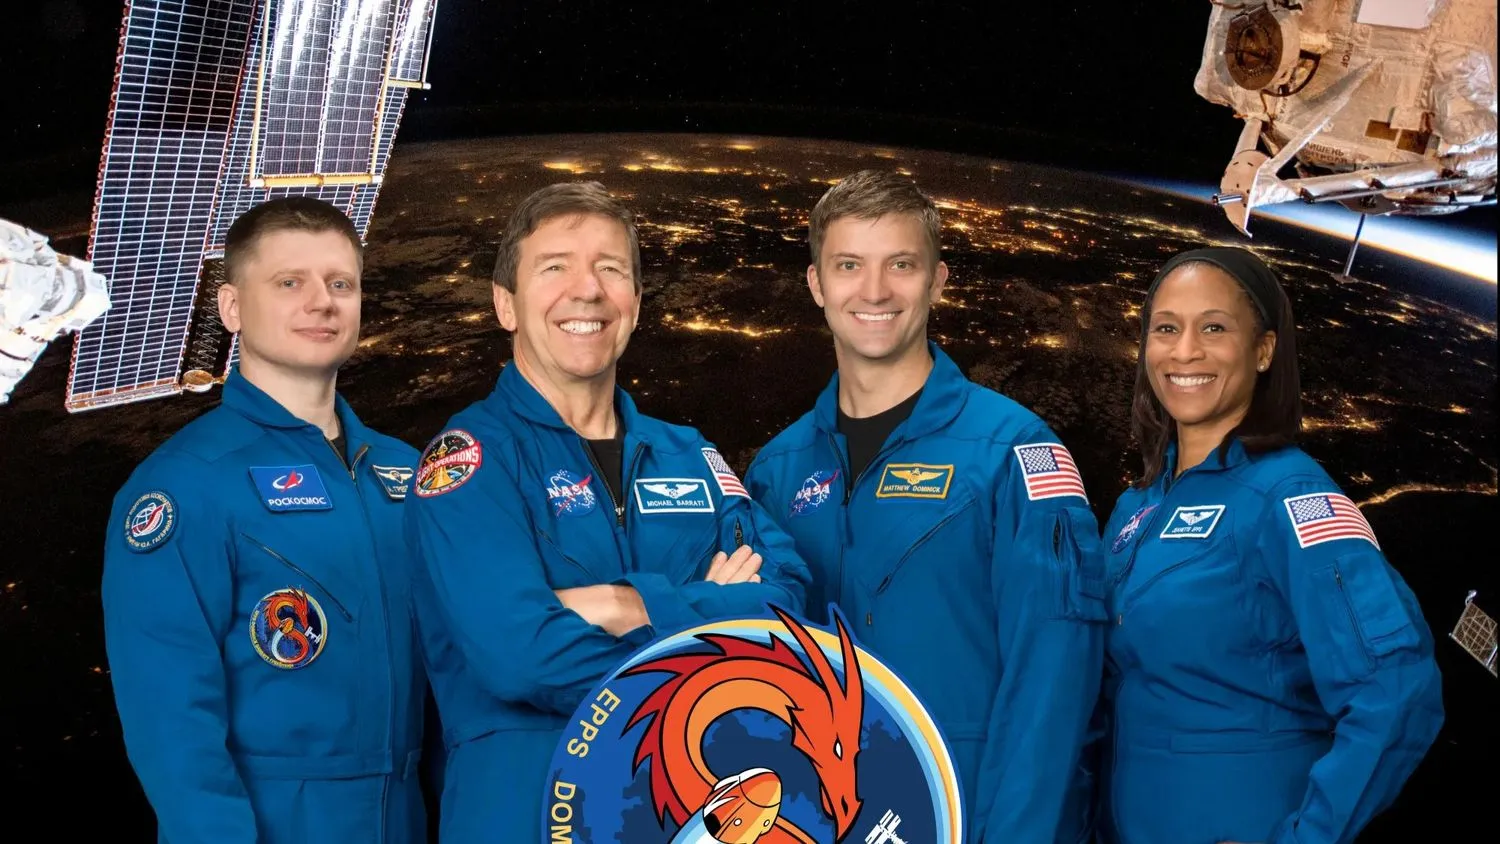 Vier lächelnde Menschen - drei Männer und eine Frau - in blauen Fluganzügen stehen vor einem Bild der nächtlichen Erde, das aus einer niedrigen Erdumlaufbahn aufgenommen wurde.